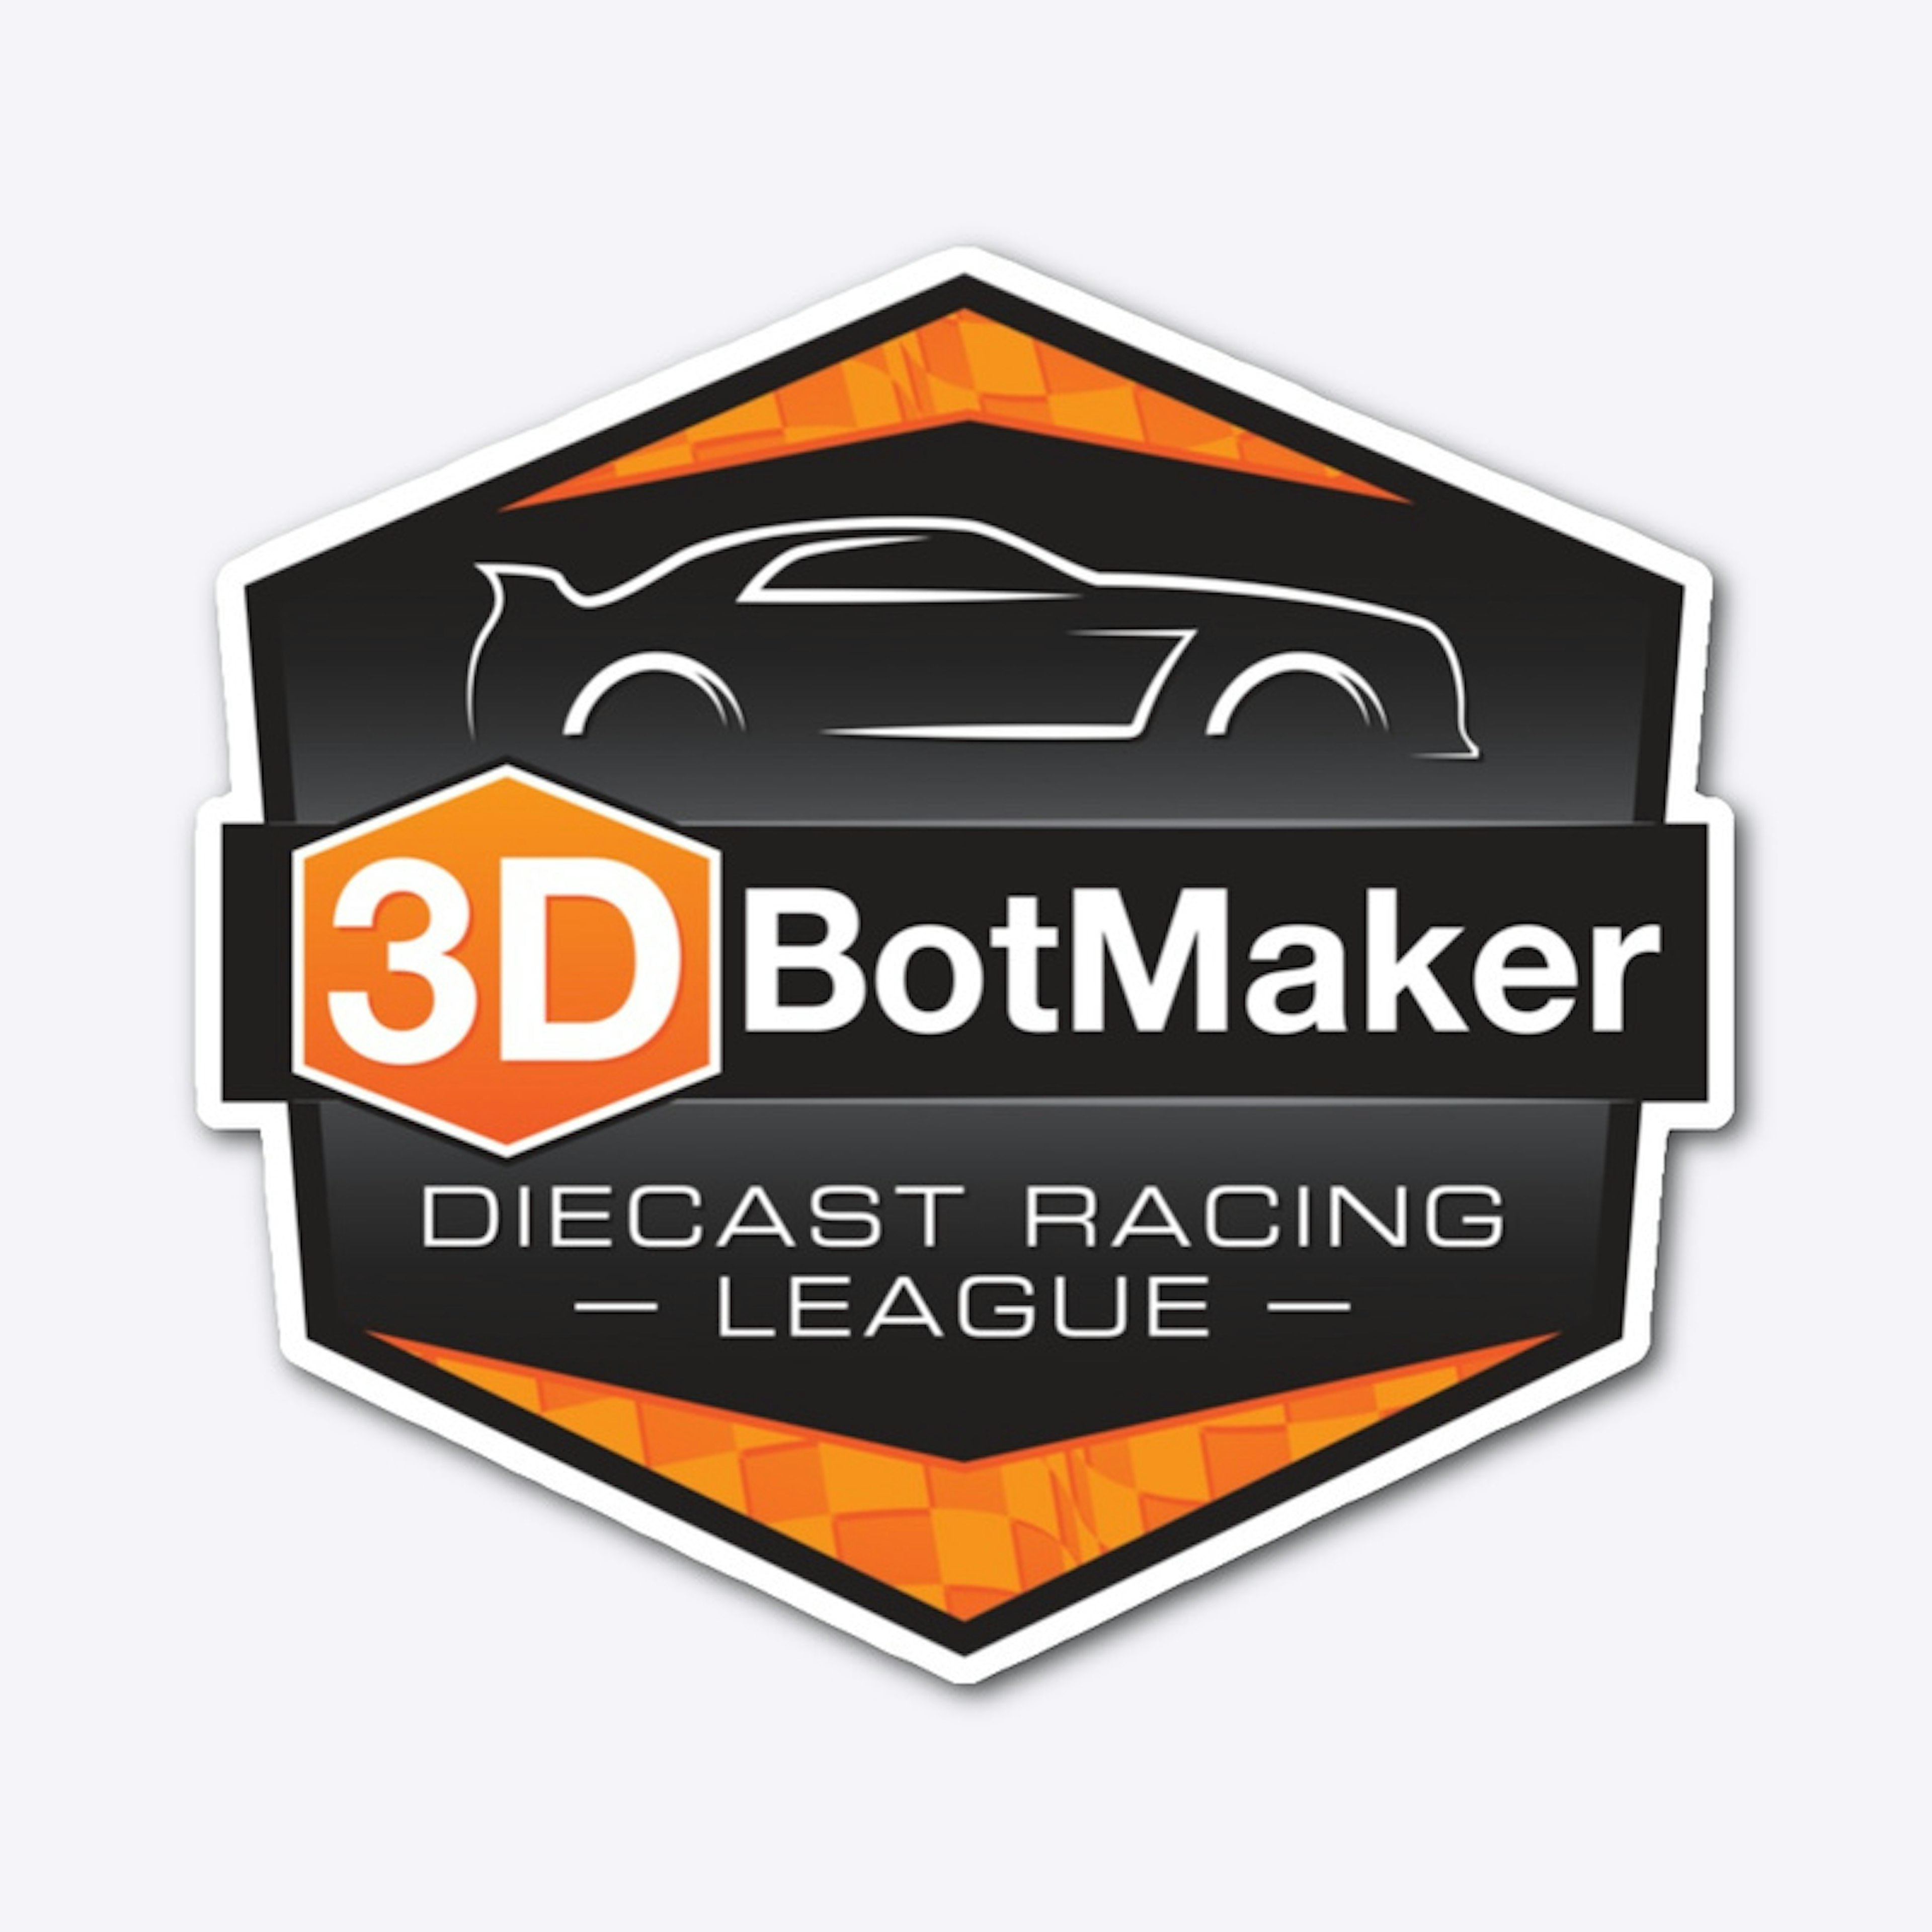 3DBotMaker Diecast Racing League Logo